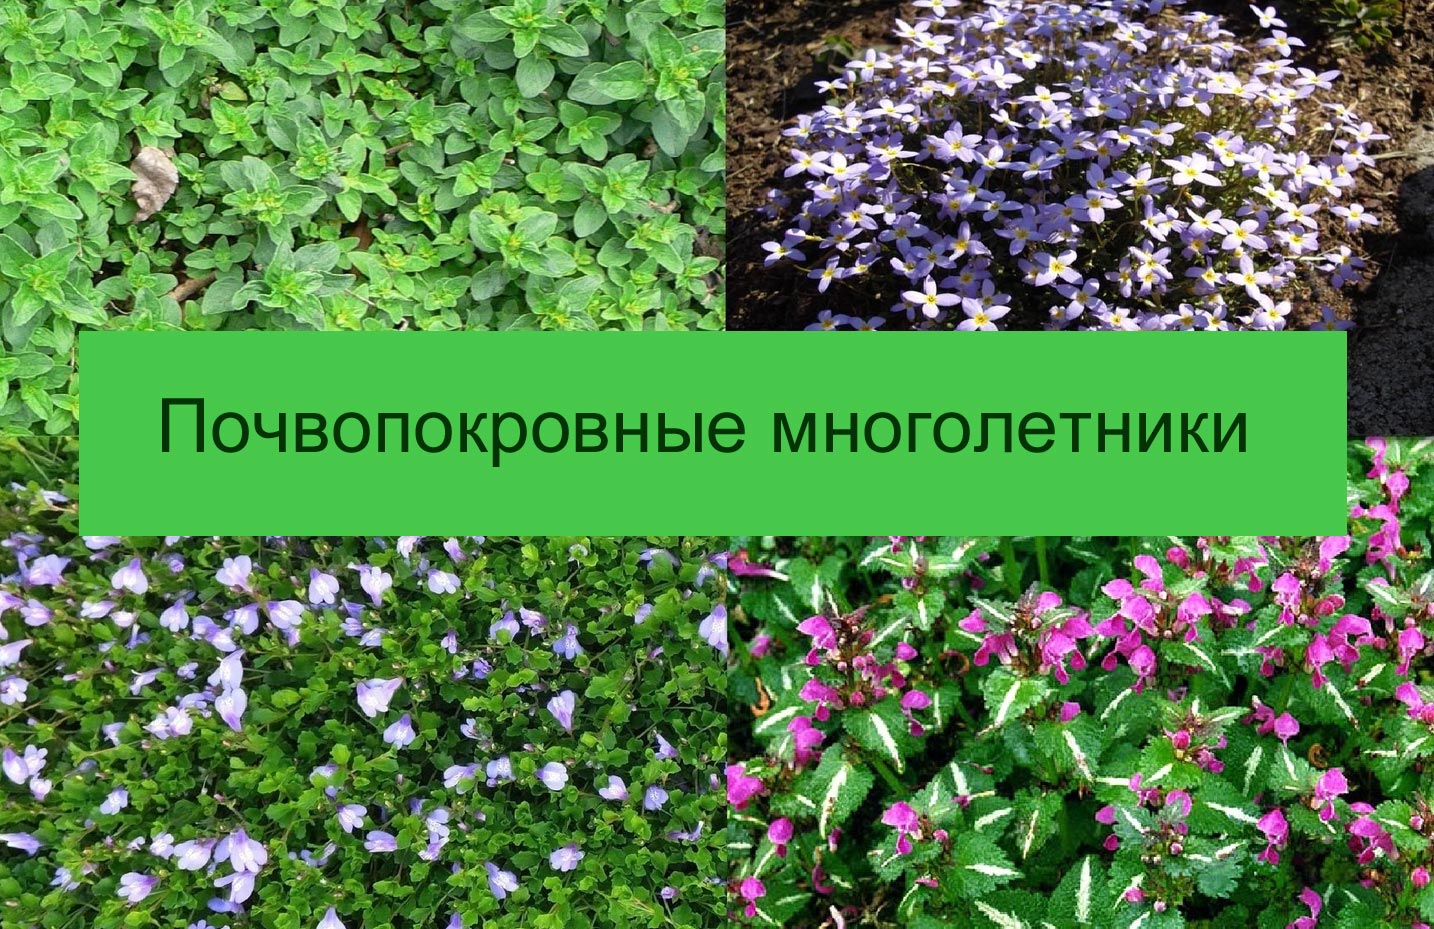 Фото и названия многолетних почвопокровных растений - цветущих и вечнозеленых0